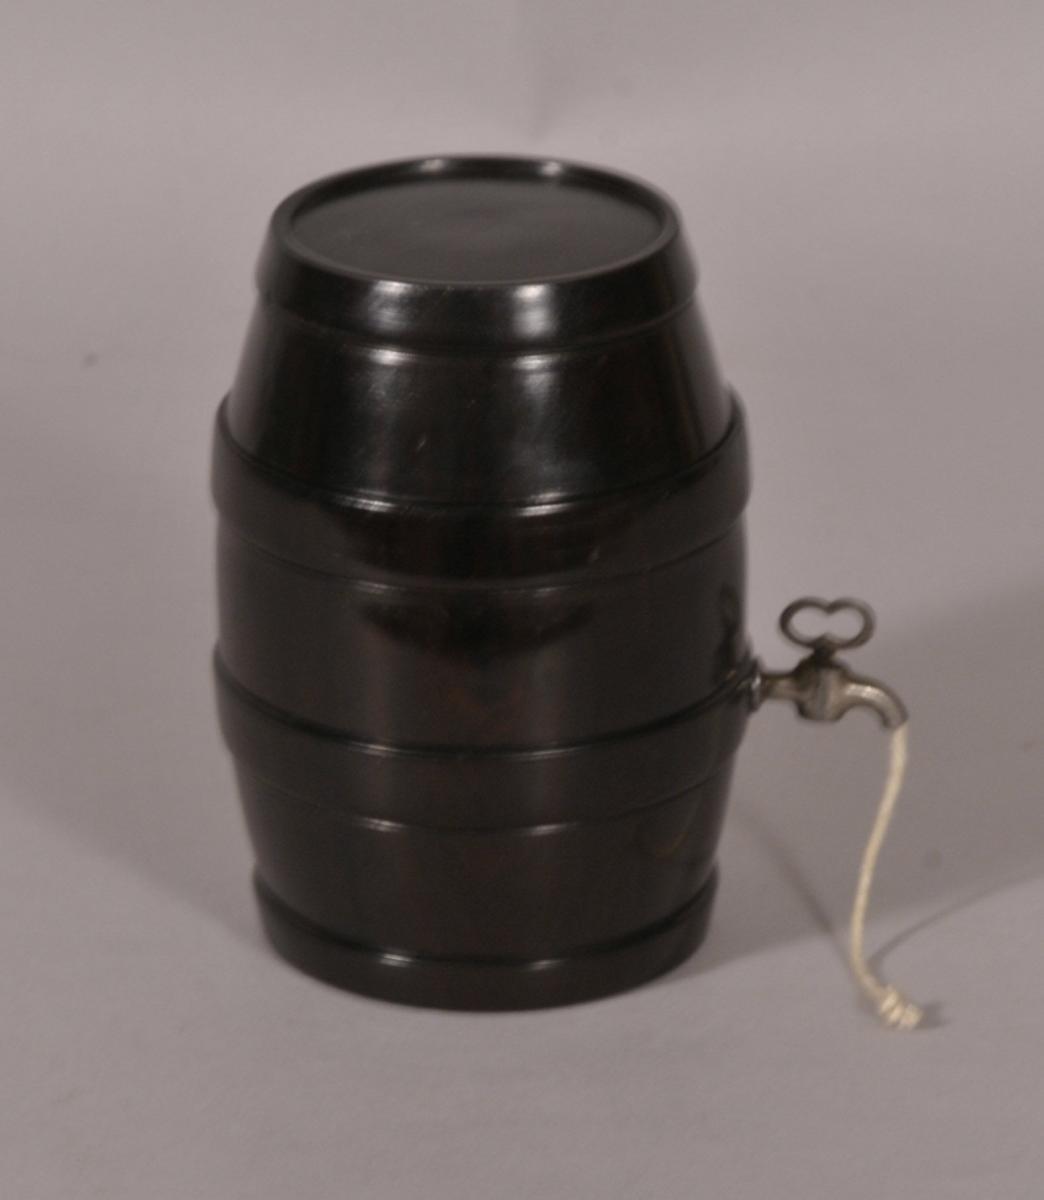 S/1820 19th Century Lignum Vitae String Barrel